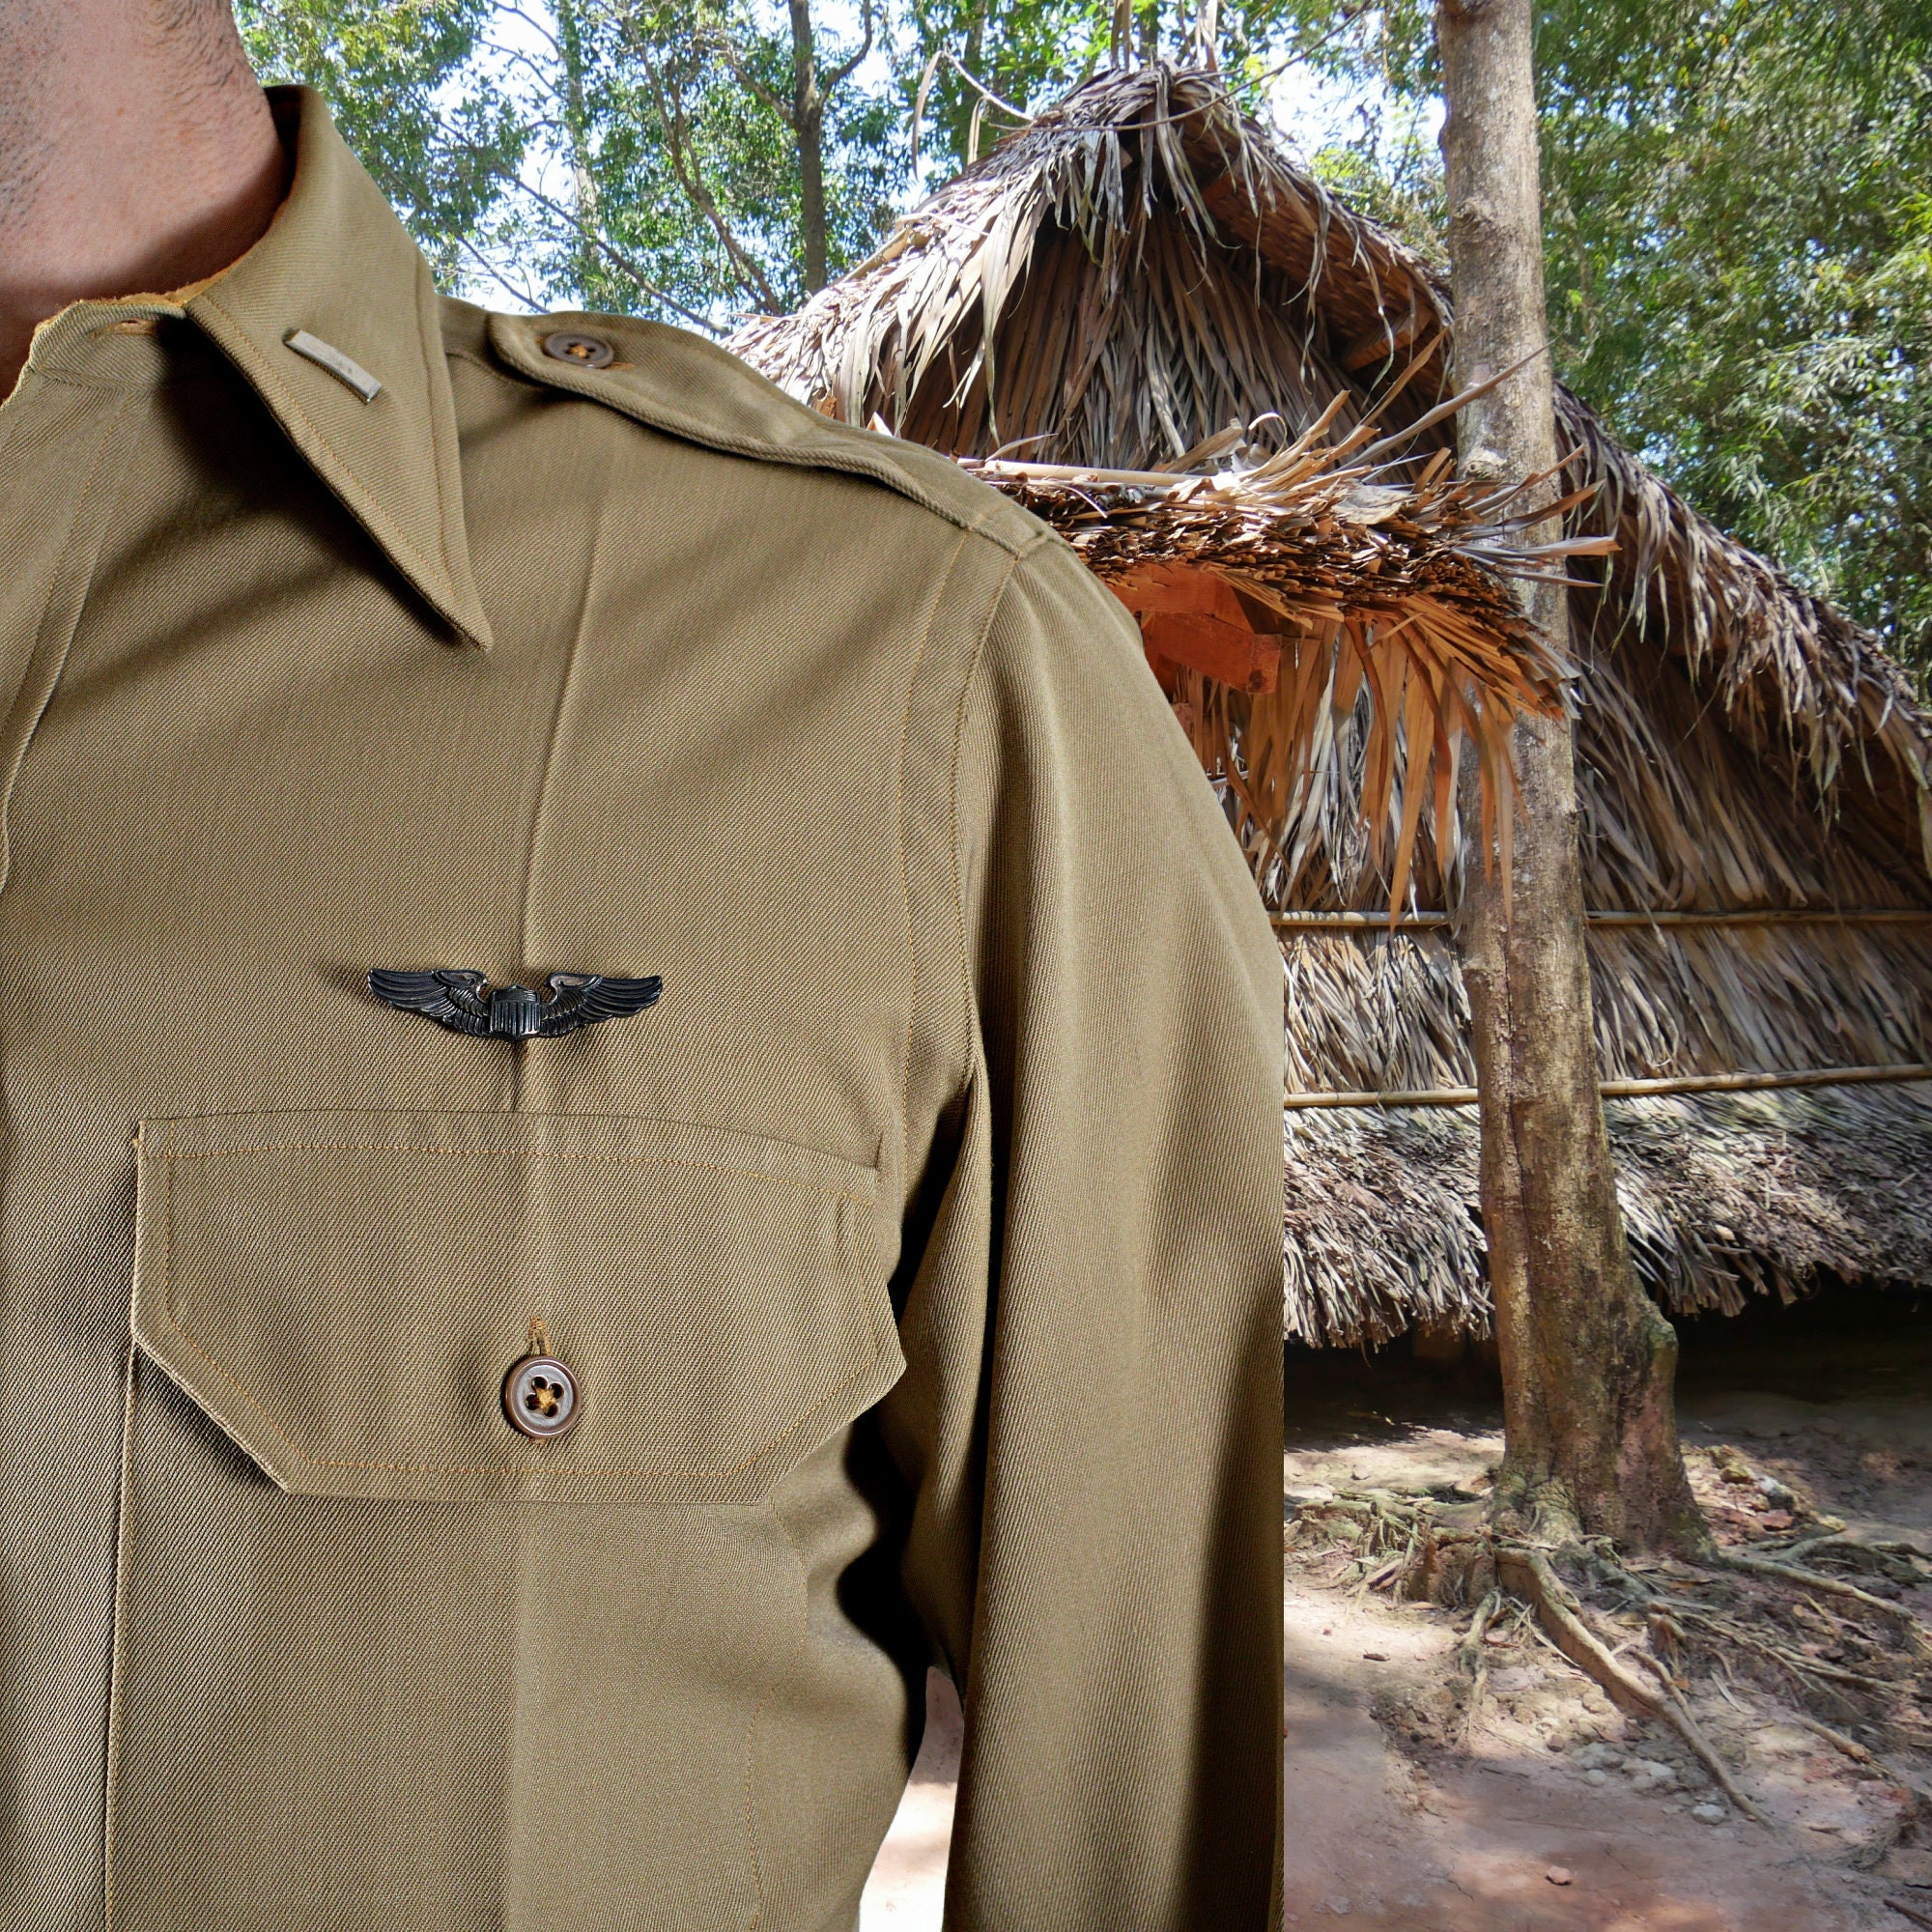 Vietnam Air Force Shirt, Beige Camo, 1950s Military Shirt,, 41% OFF